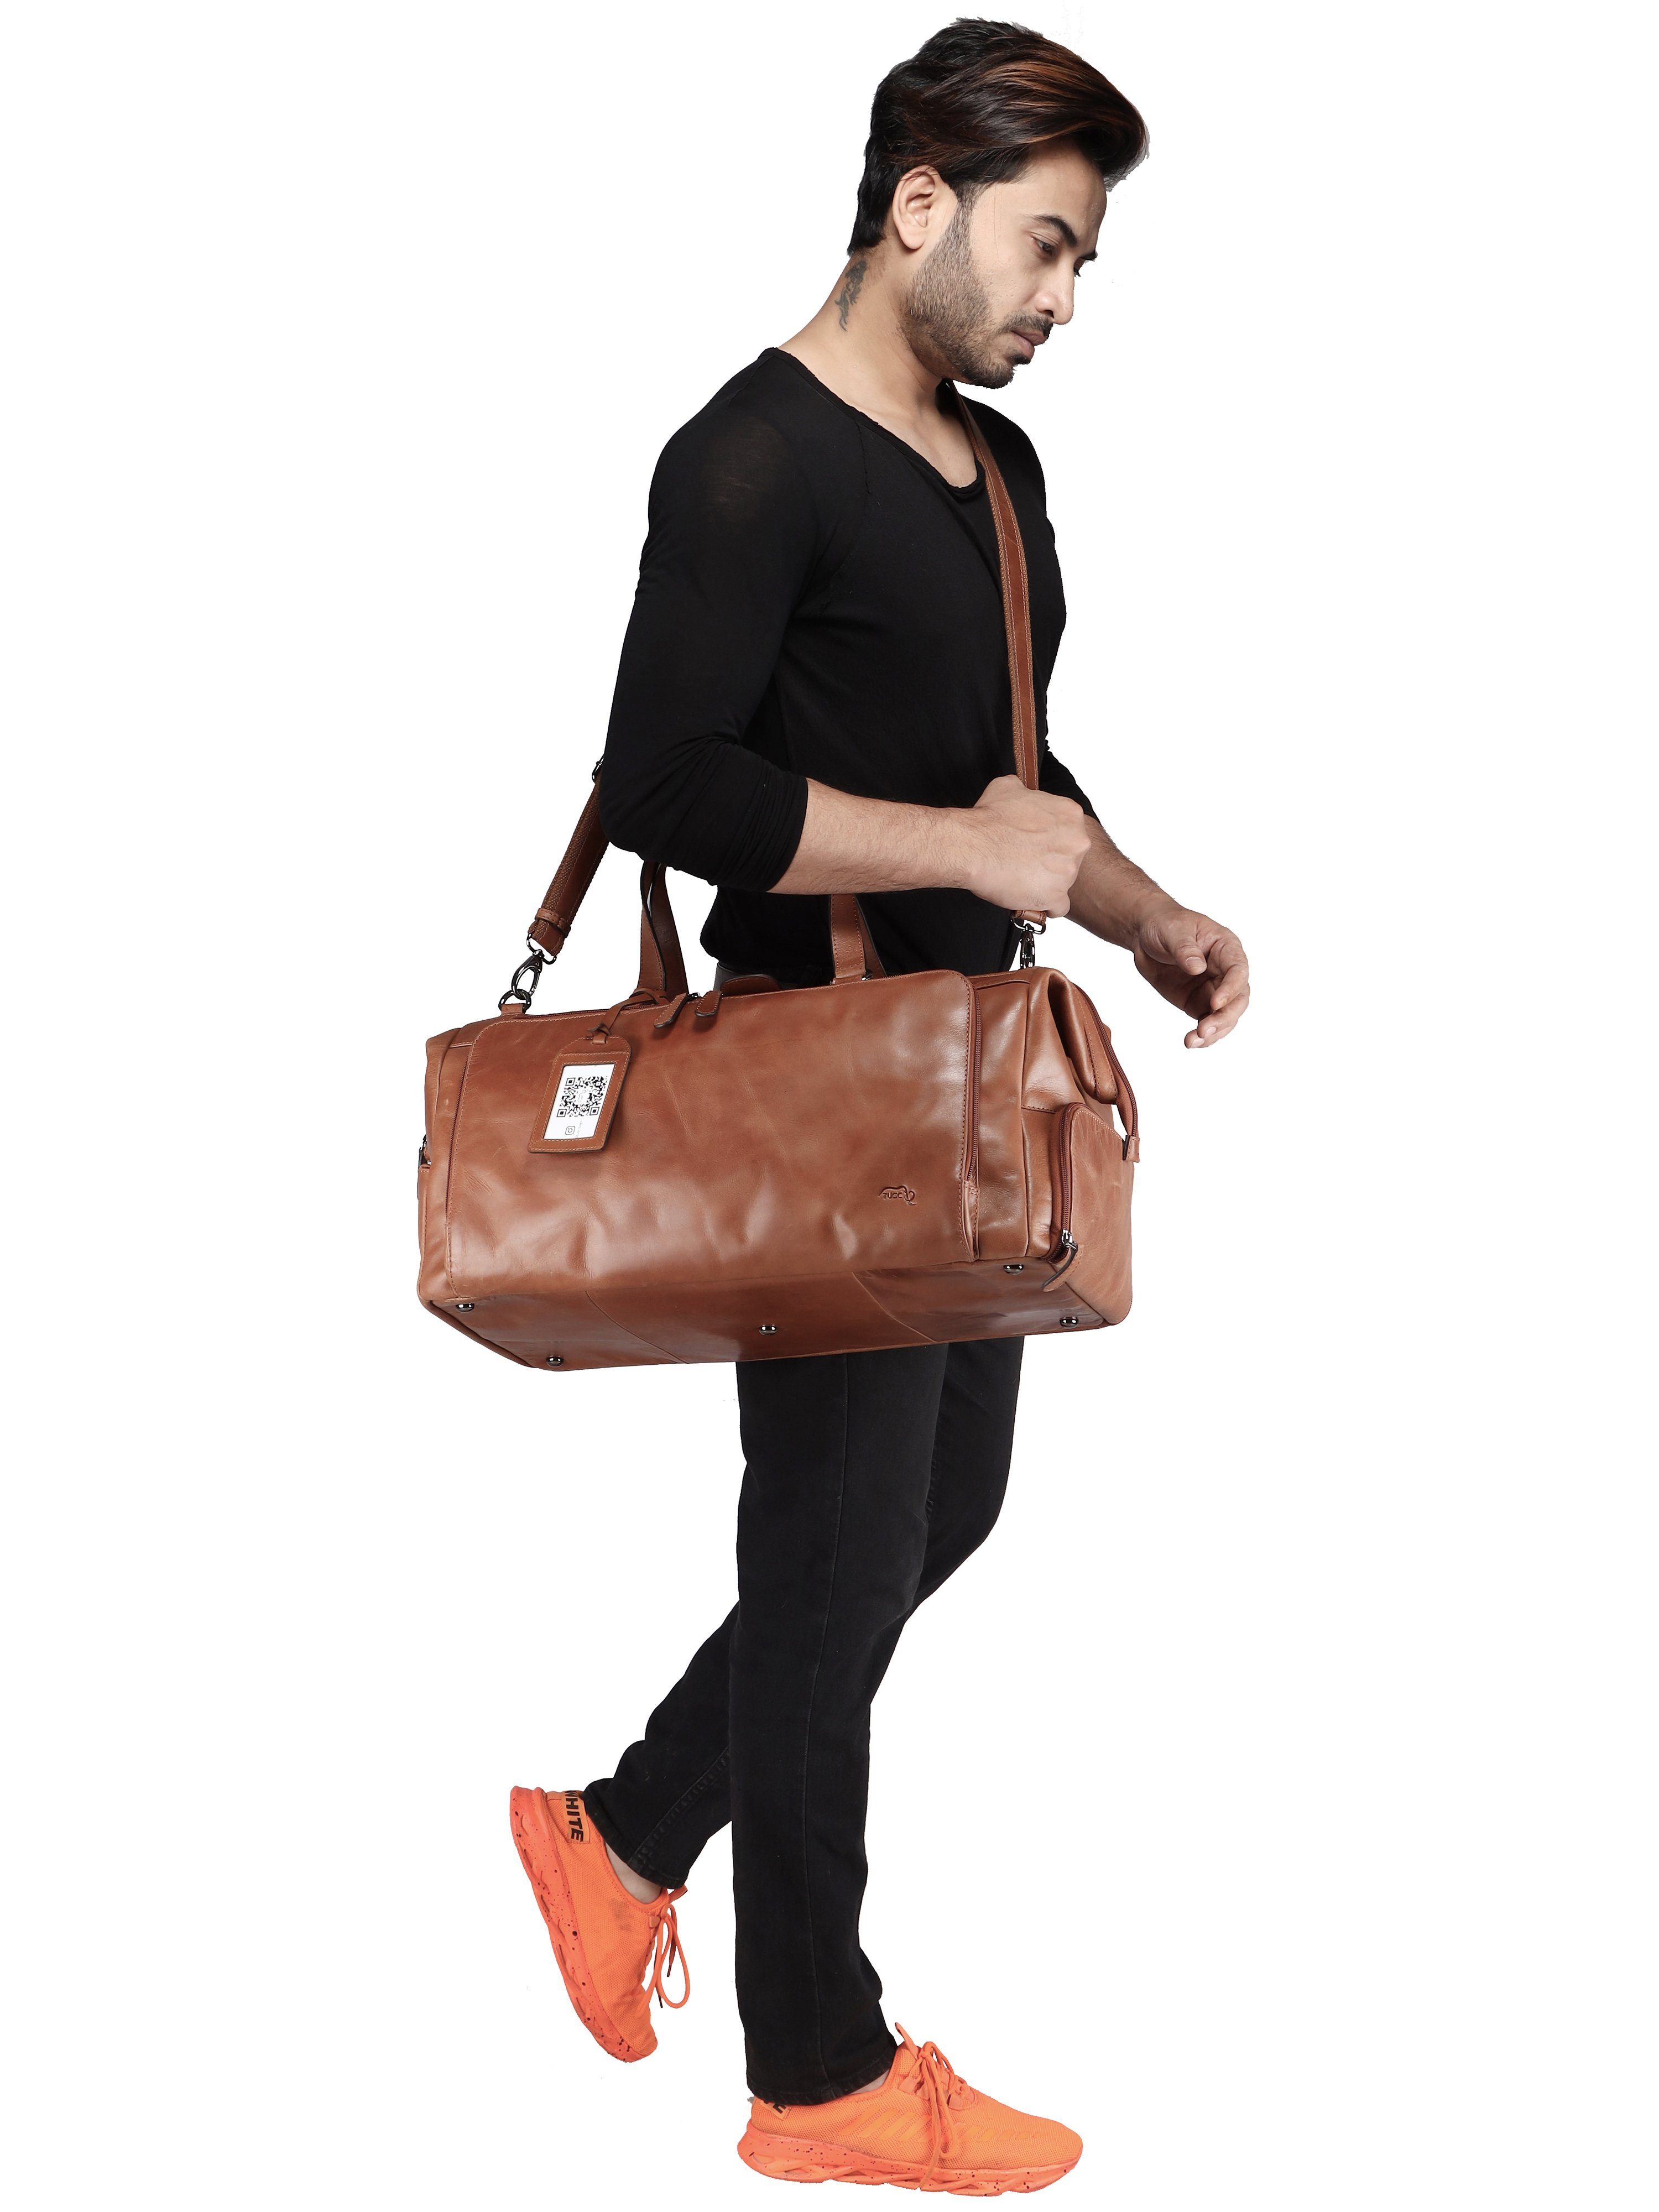 TUSC Reisetasche Tarvos, Premium Reisetasche Leder mit Laptopfach aus